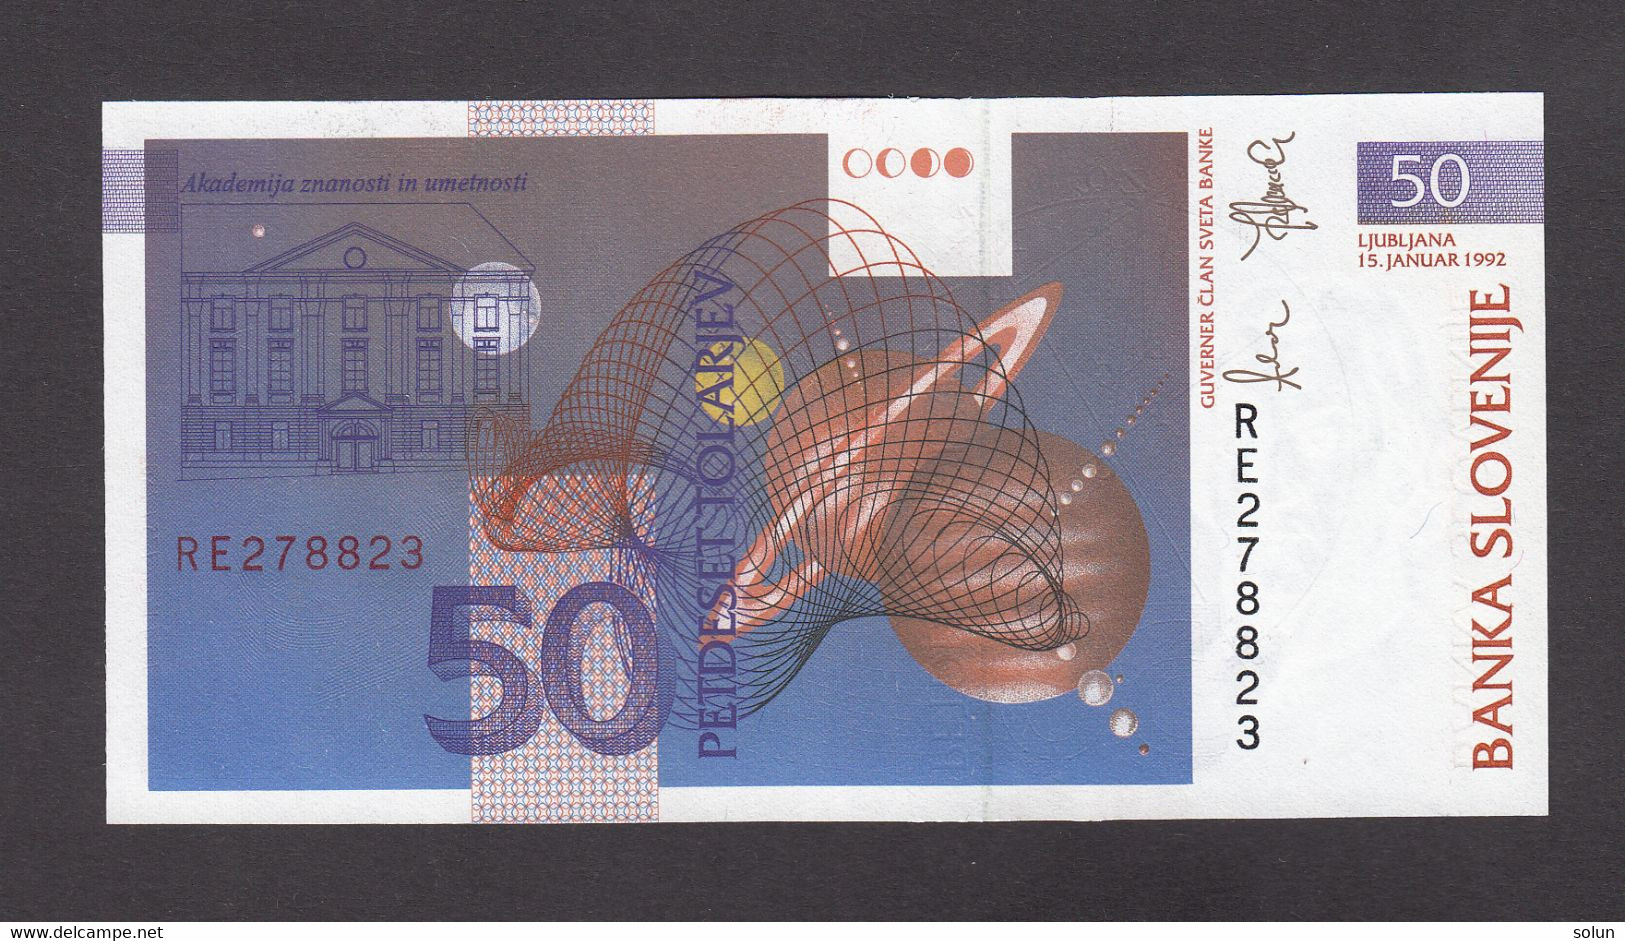 50 TOLAR TOLARJEV  1992 - Slovenia